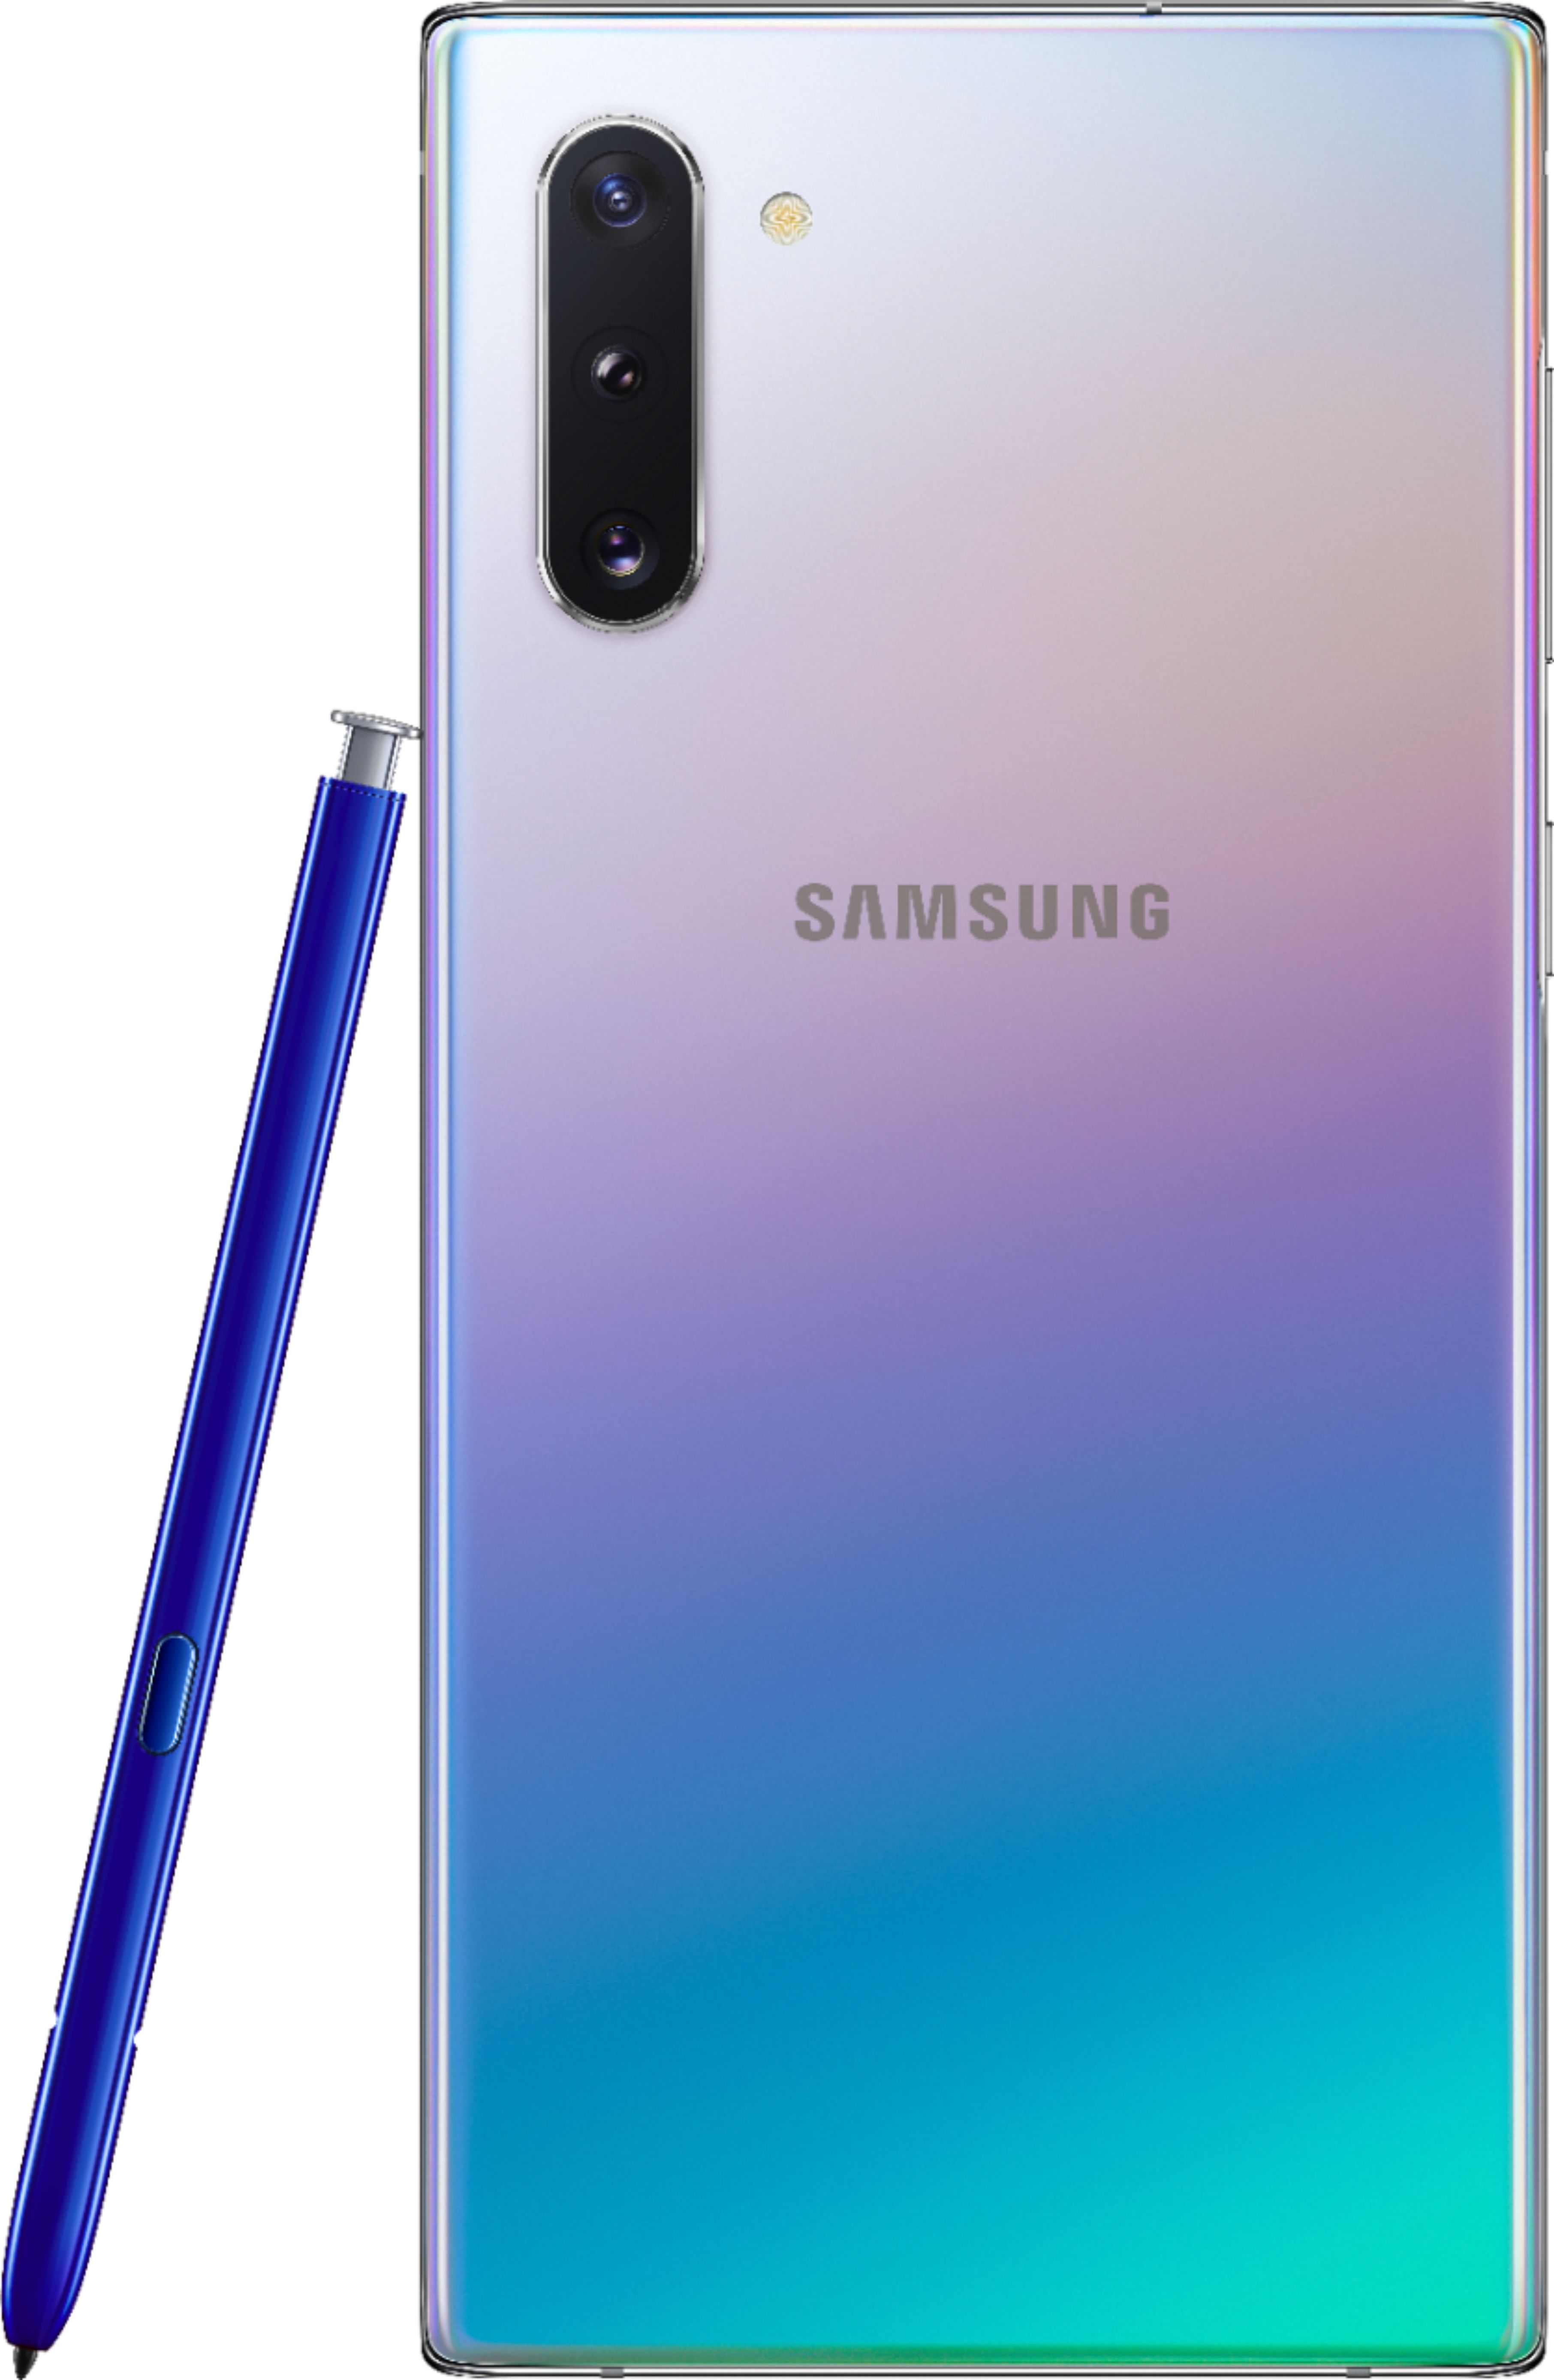 Samsung Galaxy Note 10 Lite (Aura Glow )